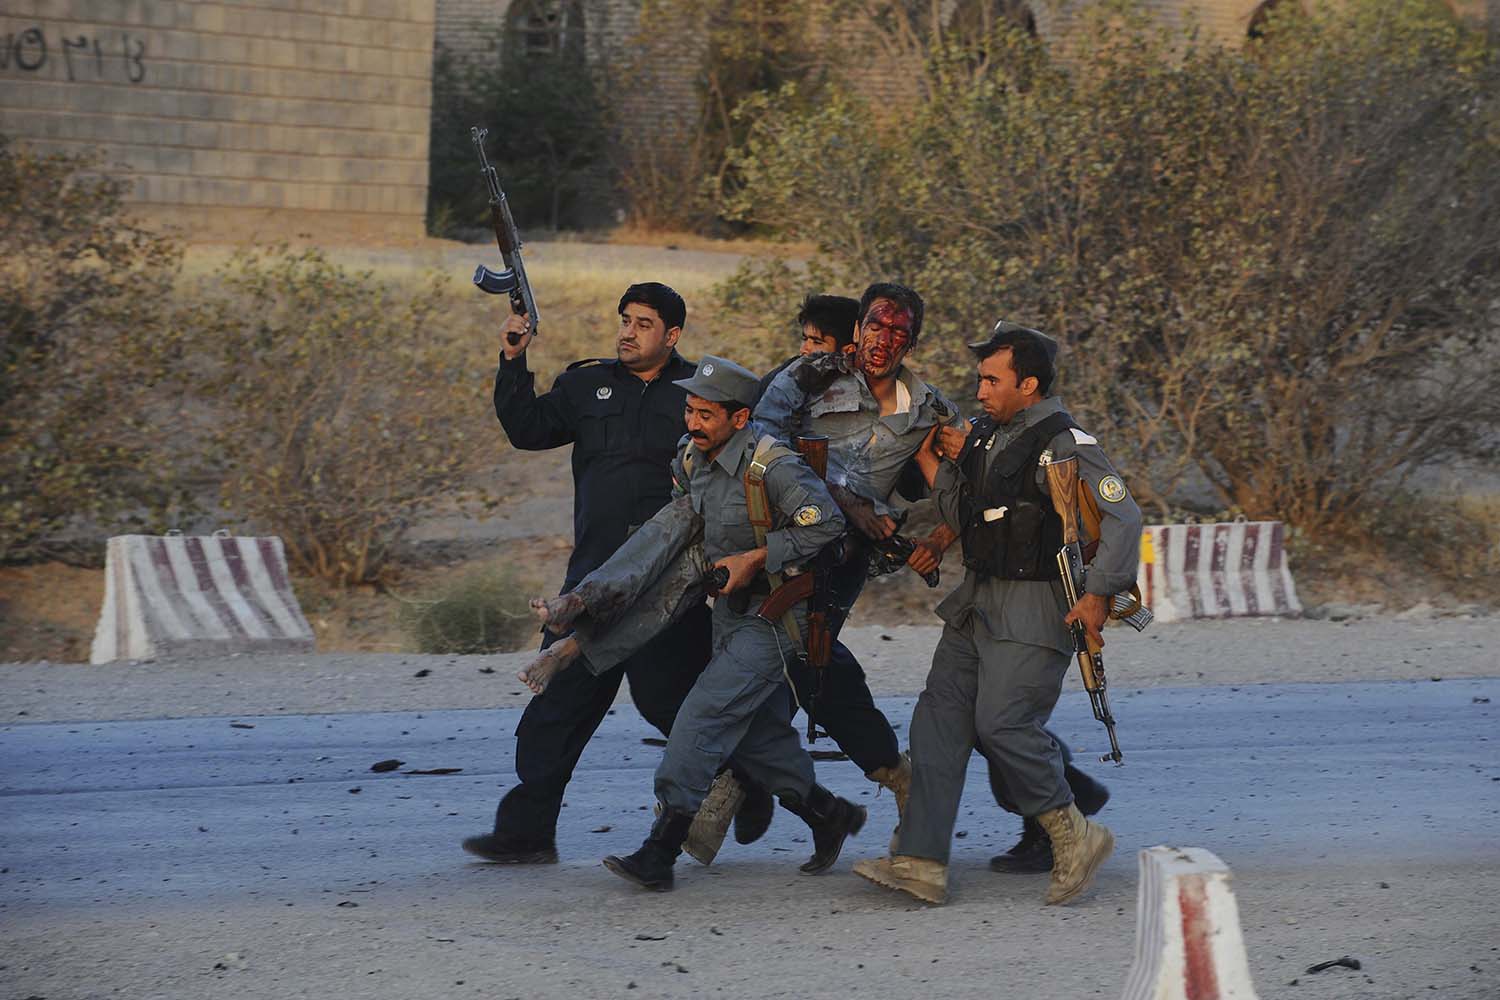 Un ataque armado contra el consulado de EEUU en Her?t (Afganistán) mata a 7 personas